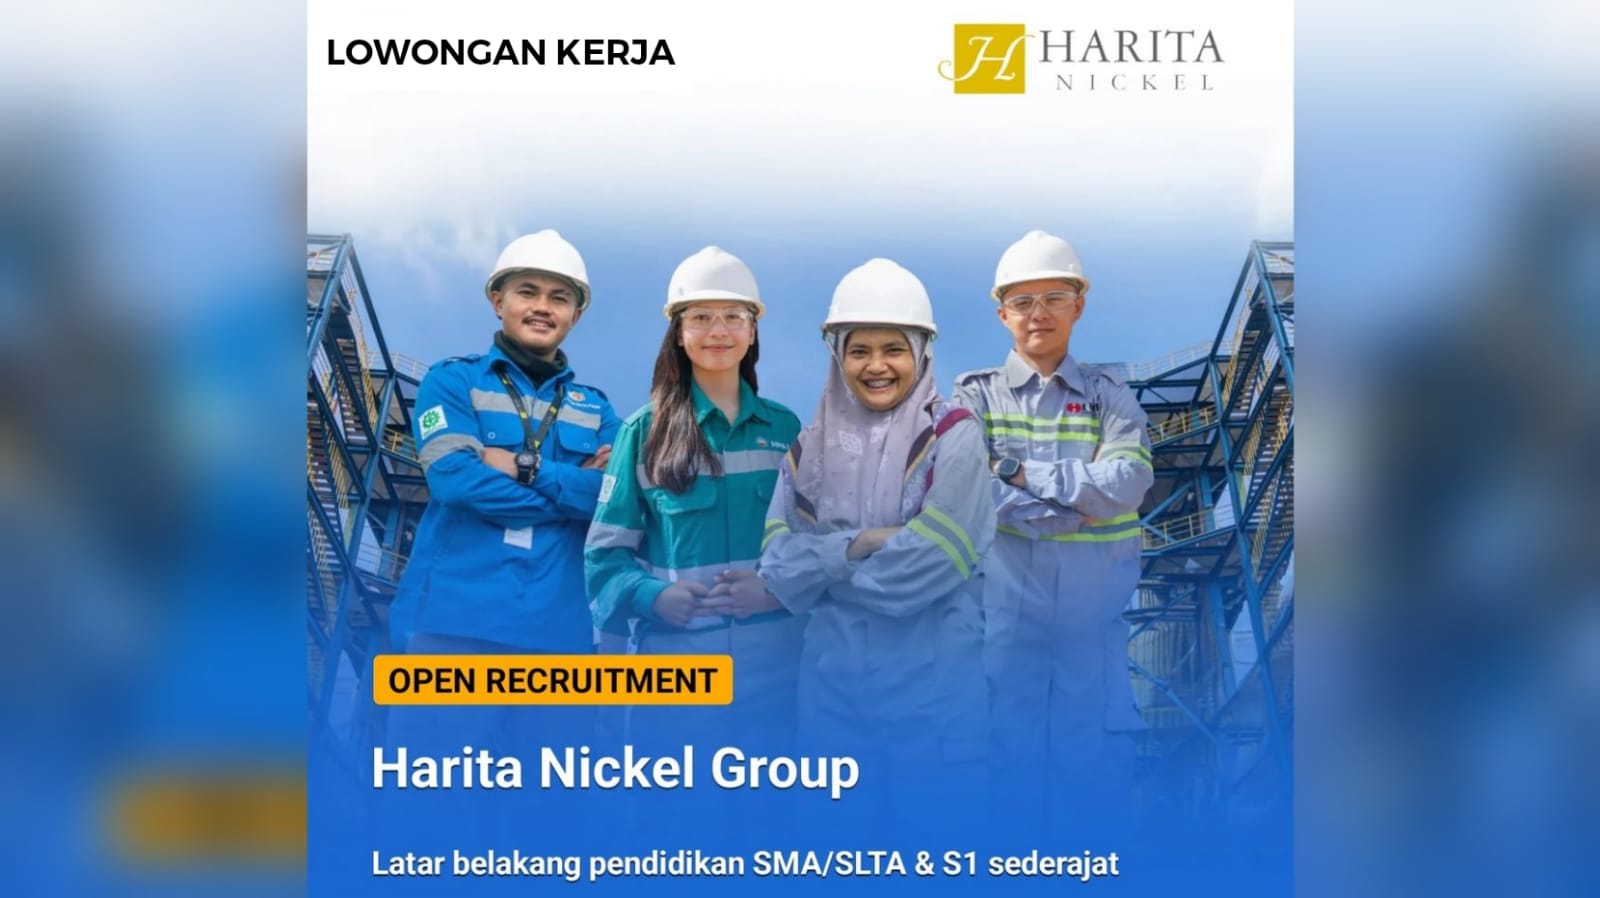 Lowongan Kerja Terbaru dari Konglomerat Bisnis Indonesia Harita Nickel Group Ini Syaratnya